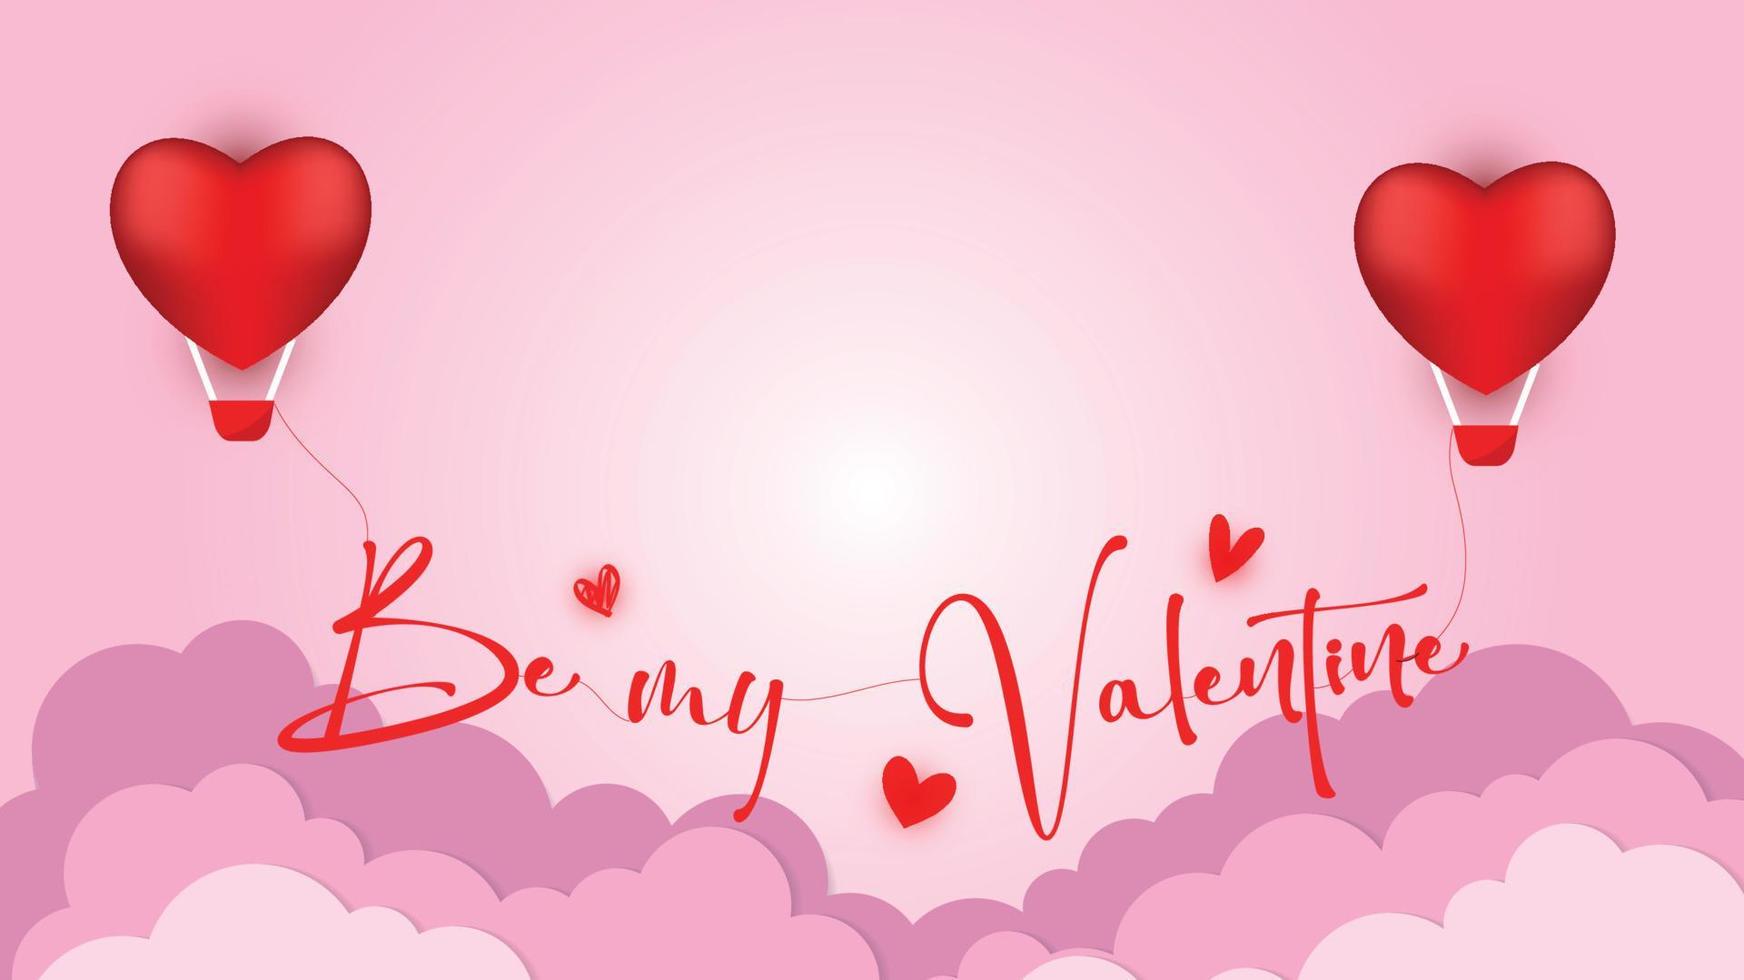 carte postale d'amour de vecteur pour la saint valentin avec l'inscription suspendue be my valentine papier nuages et fond rose